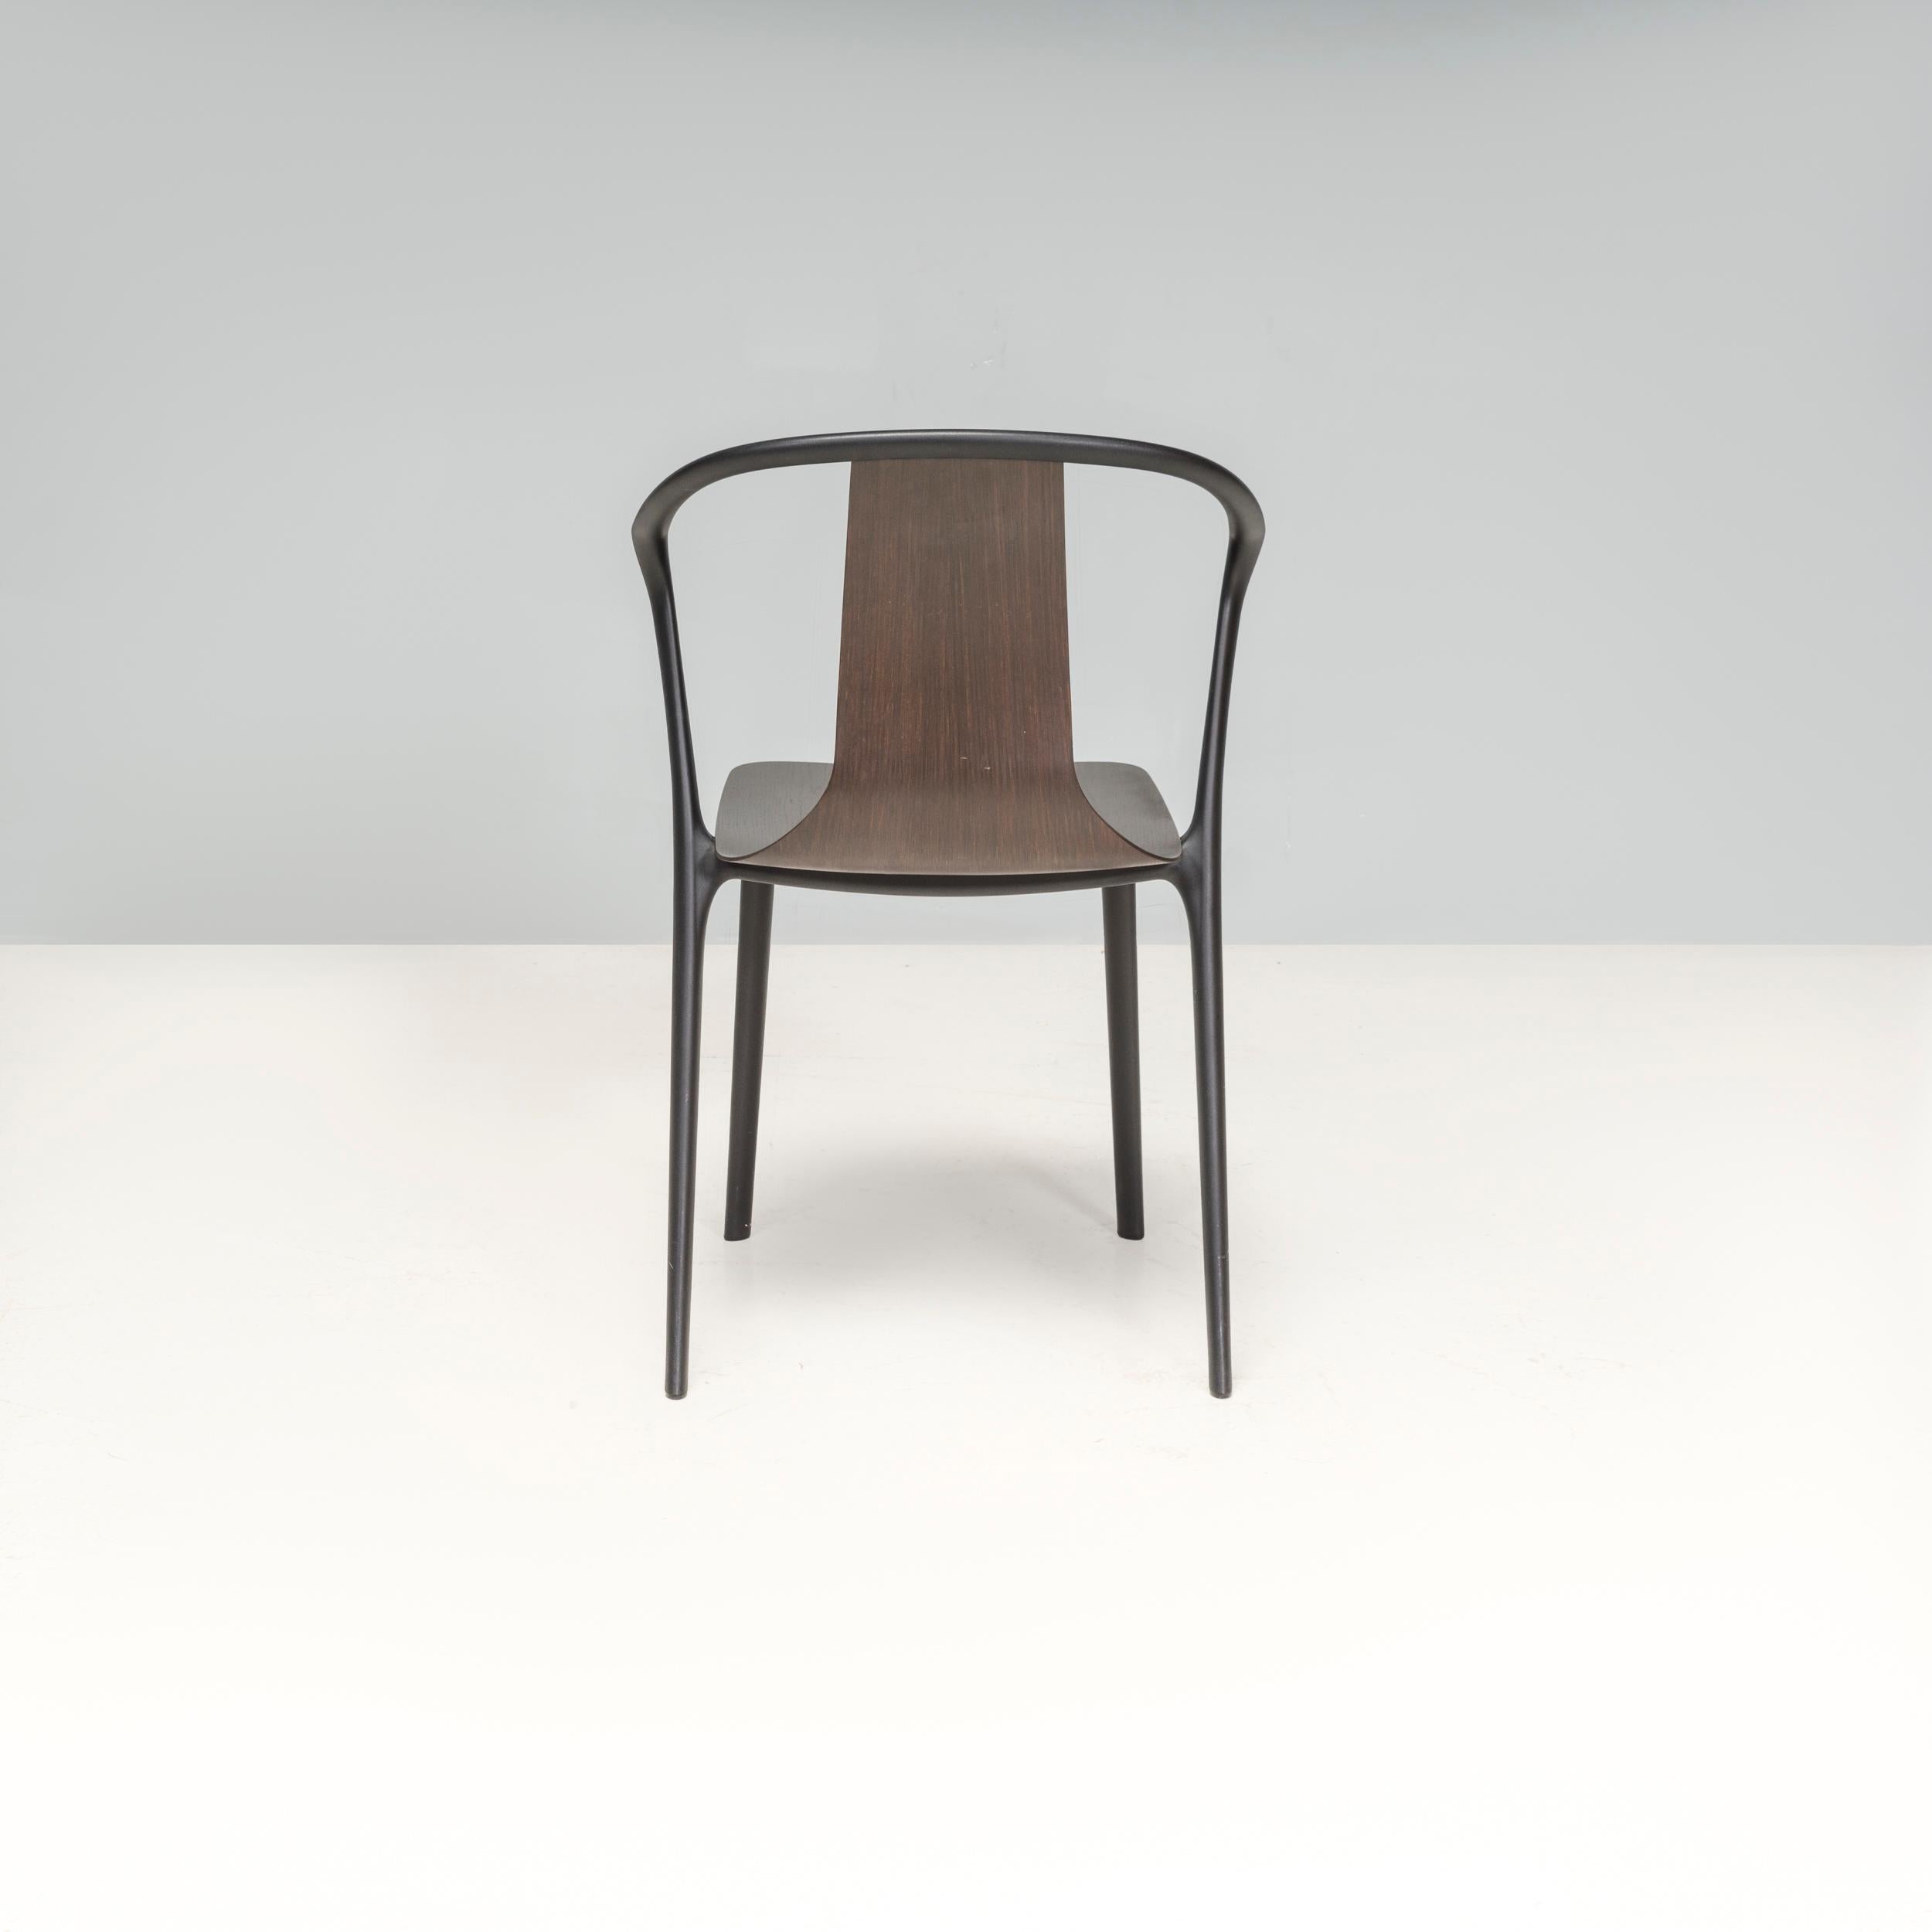 Der Belleville Esszimmerstuhl wurde ursprünglich 2015 von Ronan & Erwan Bouroullec für Vitra entworfen und verleiht dem klassischen Bistrostuhl ein modernes Update. 

Die Stühle bestehen aus einem schwarz lackierten Polyamid-Gestell und haben eine